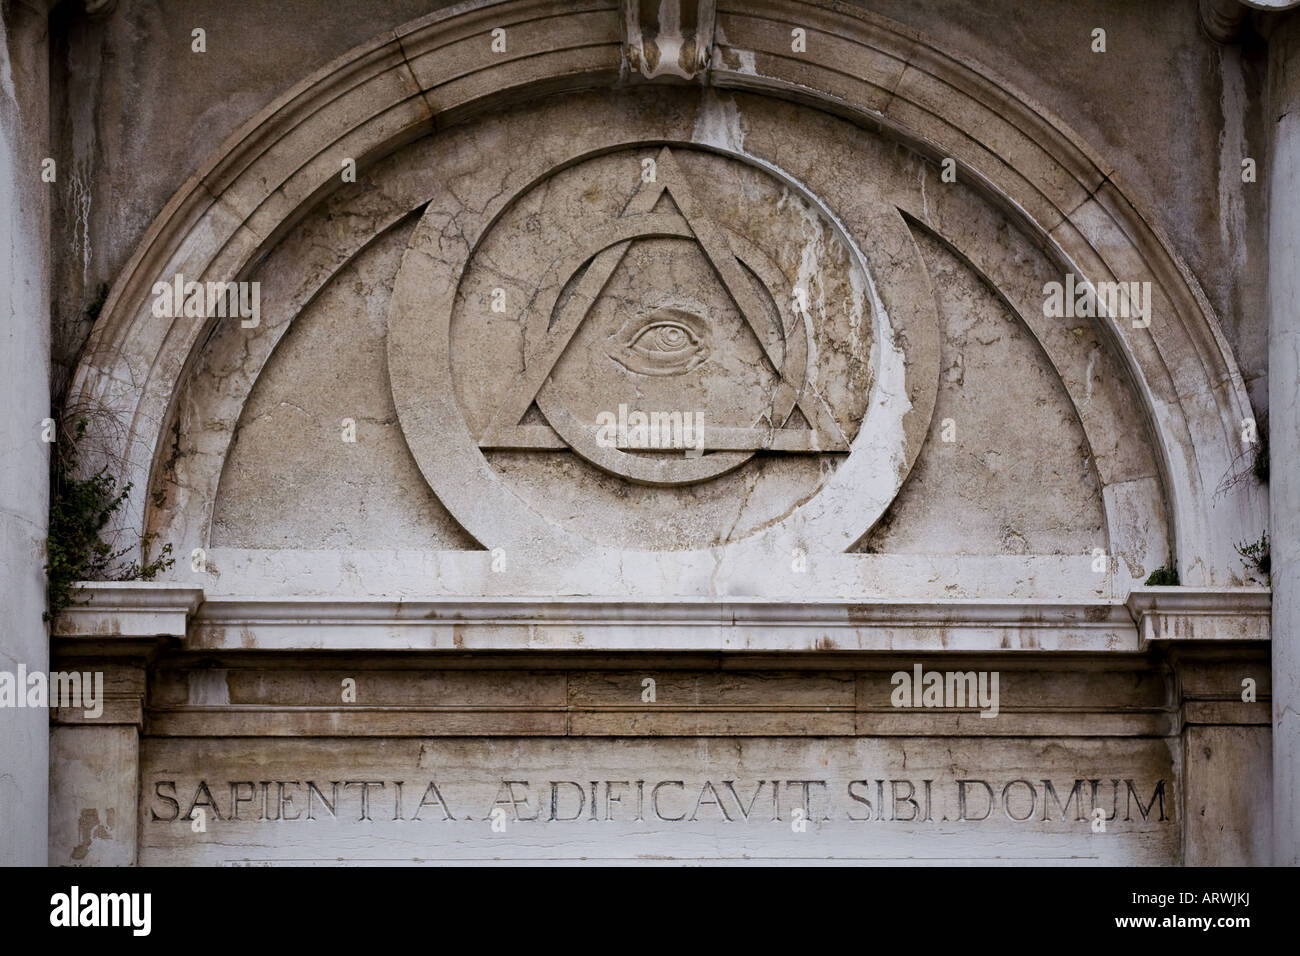 Inscription on the front portal of La Maddalena church in Venice Stock Photo